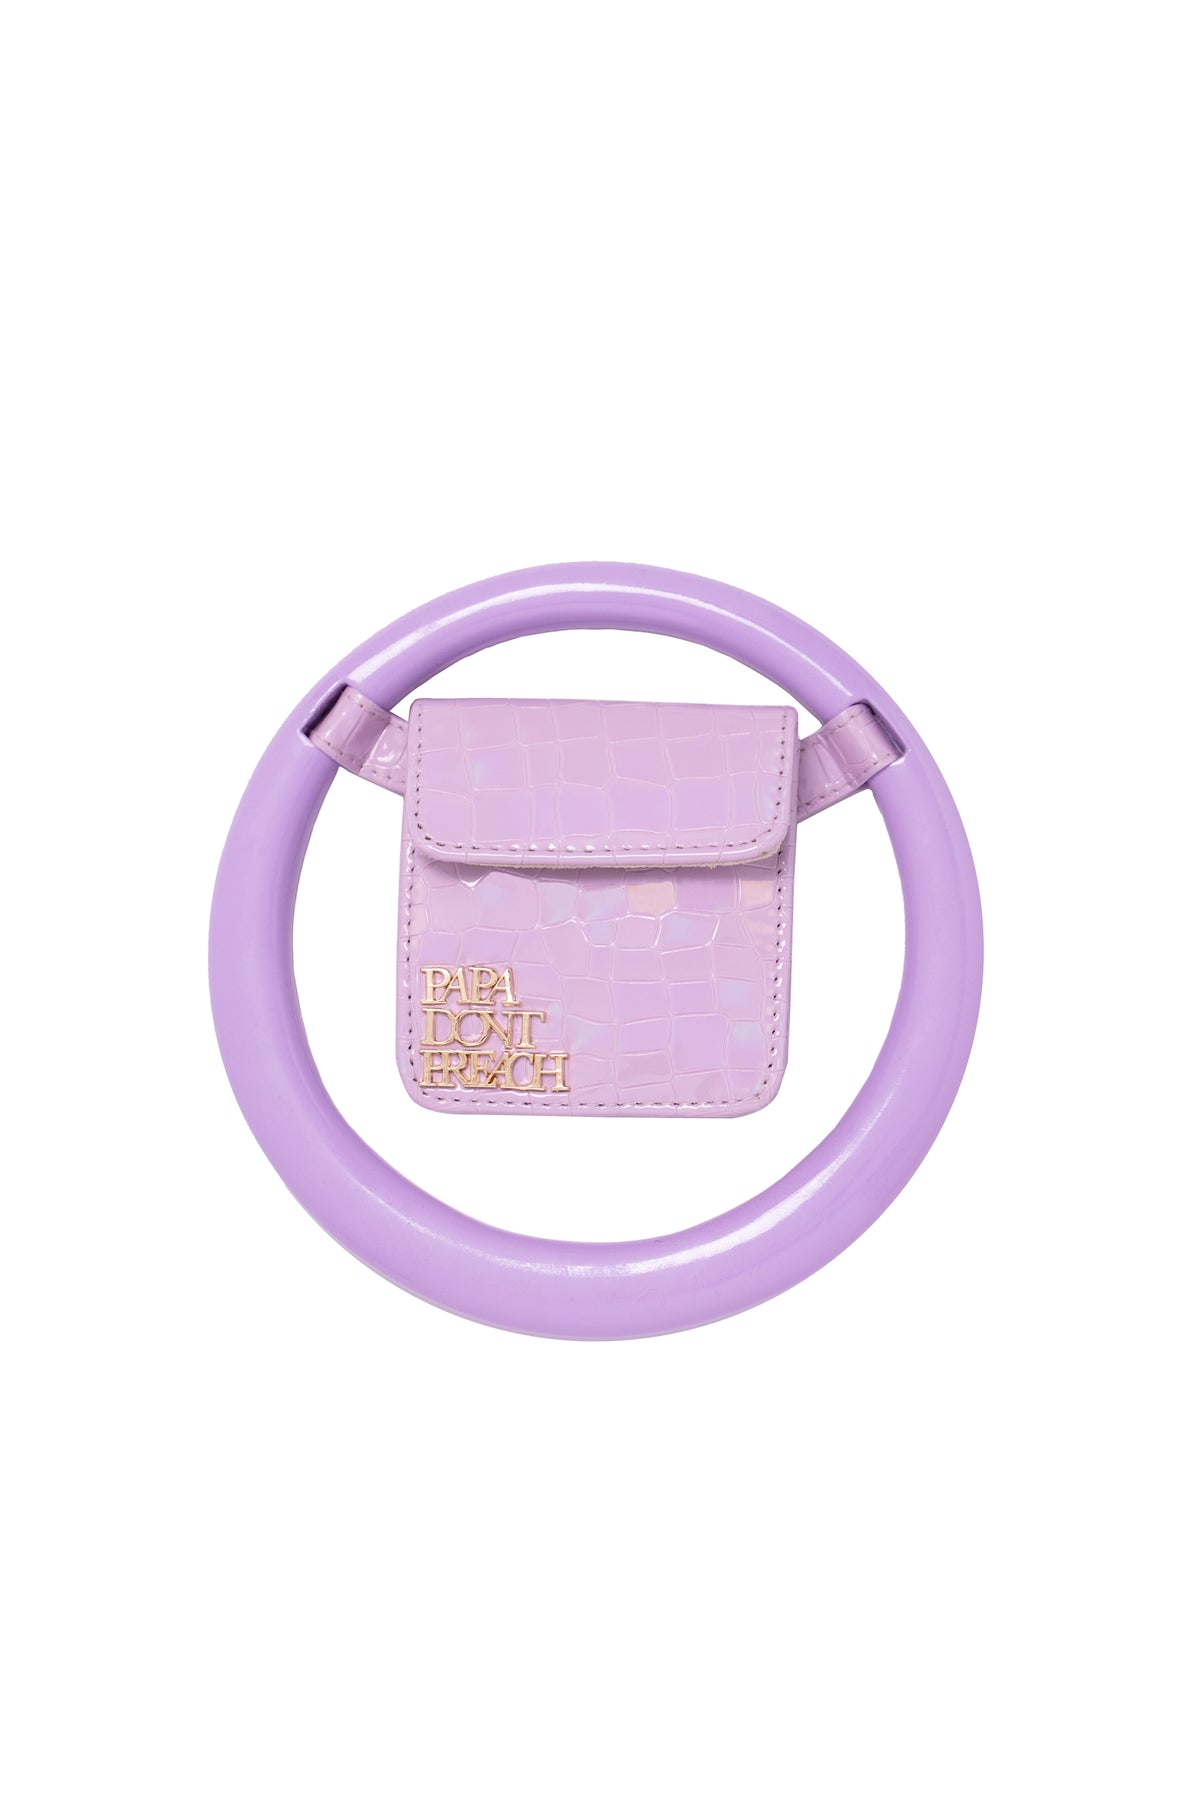 Lavender Spidey Bag